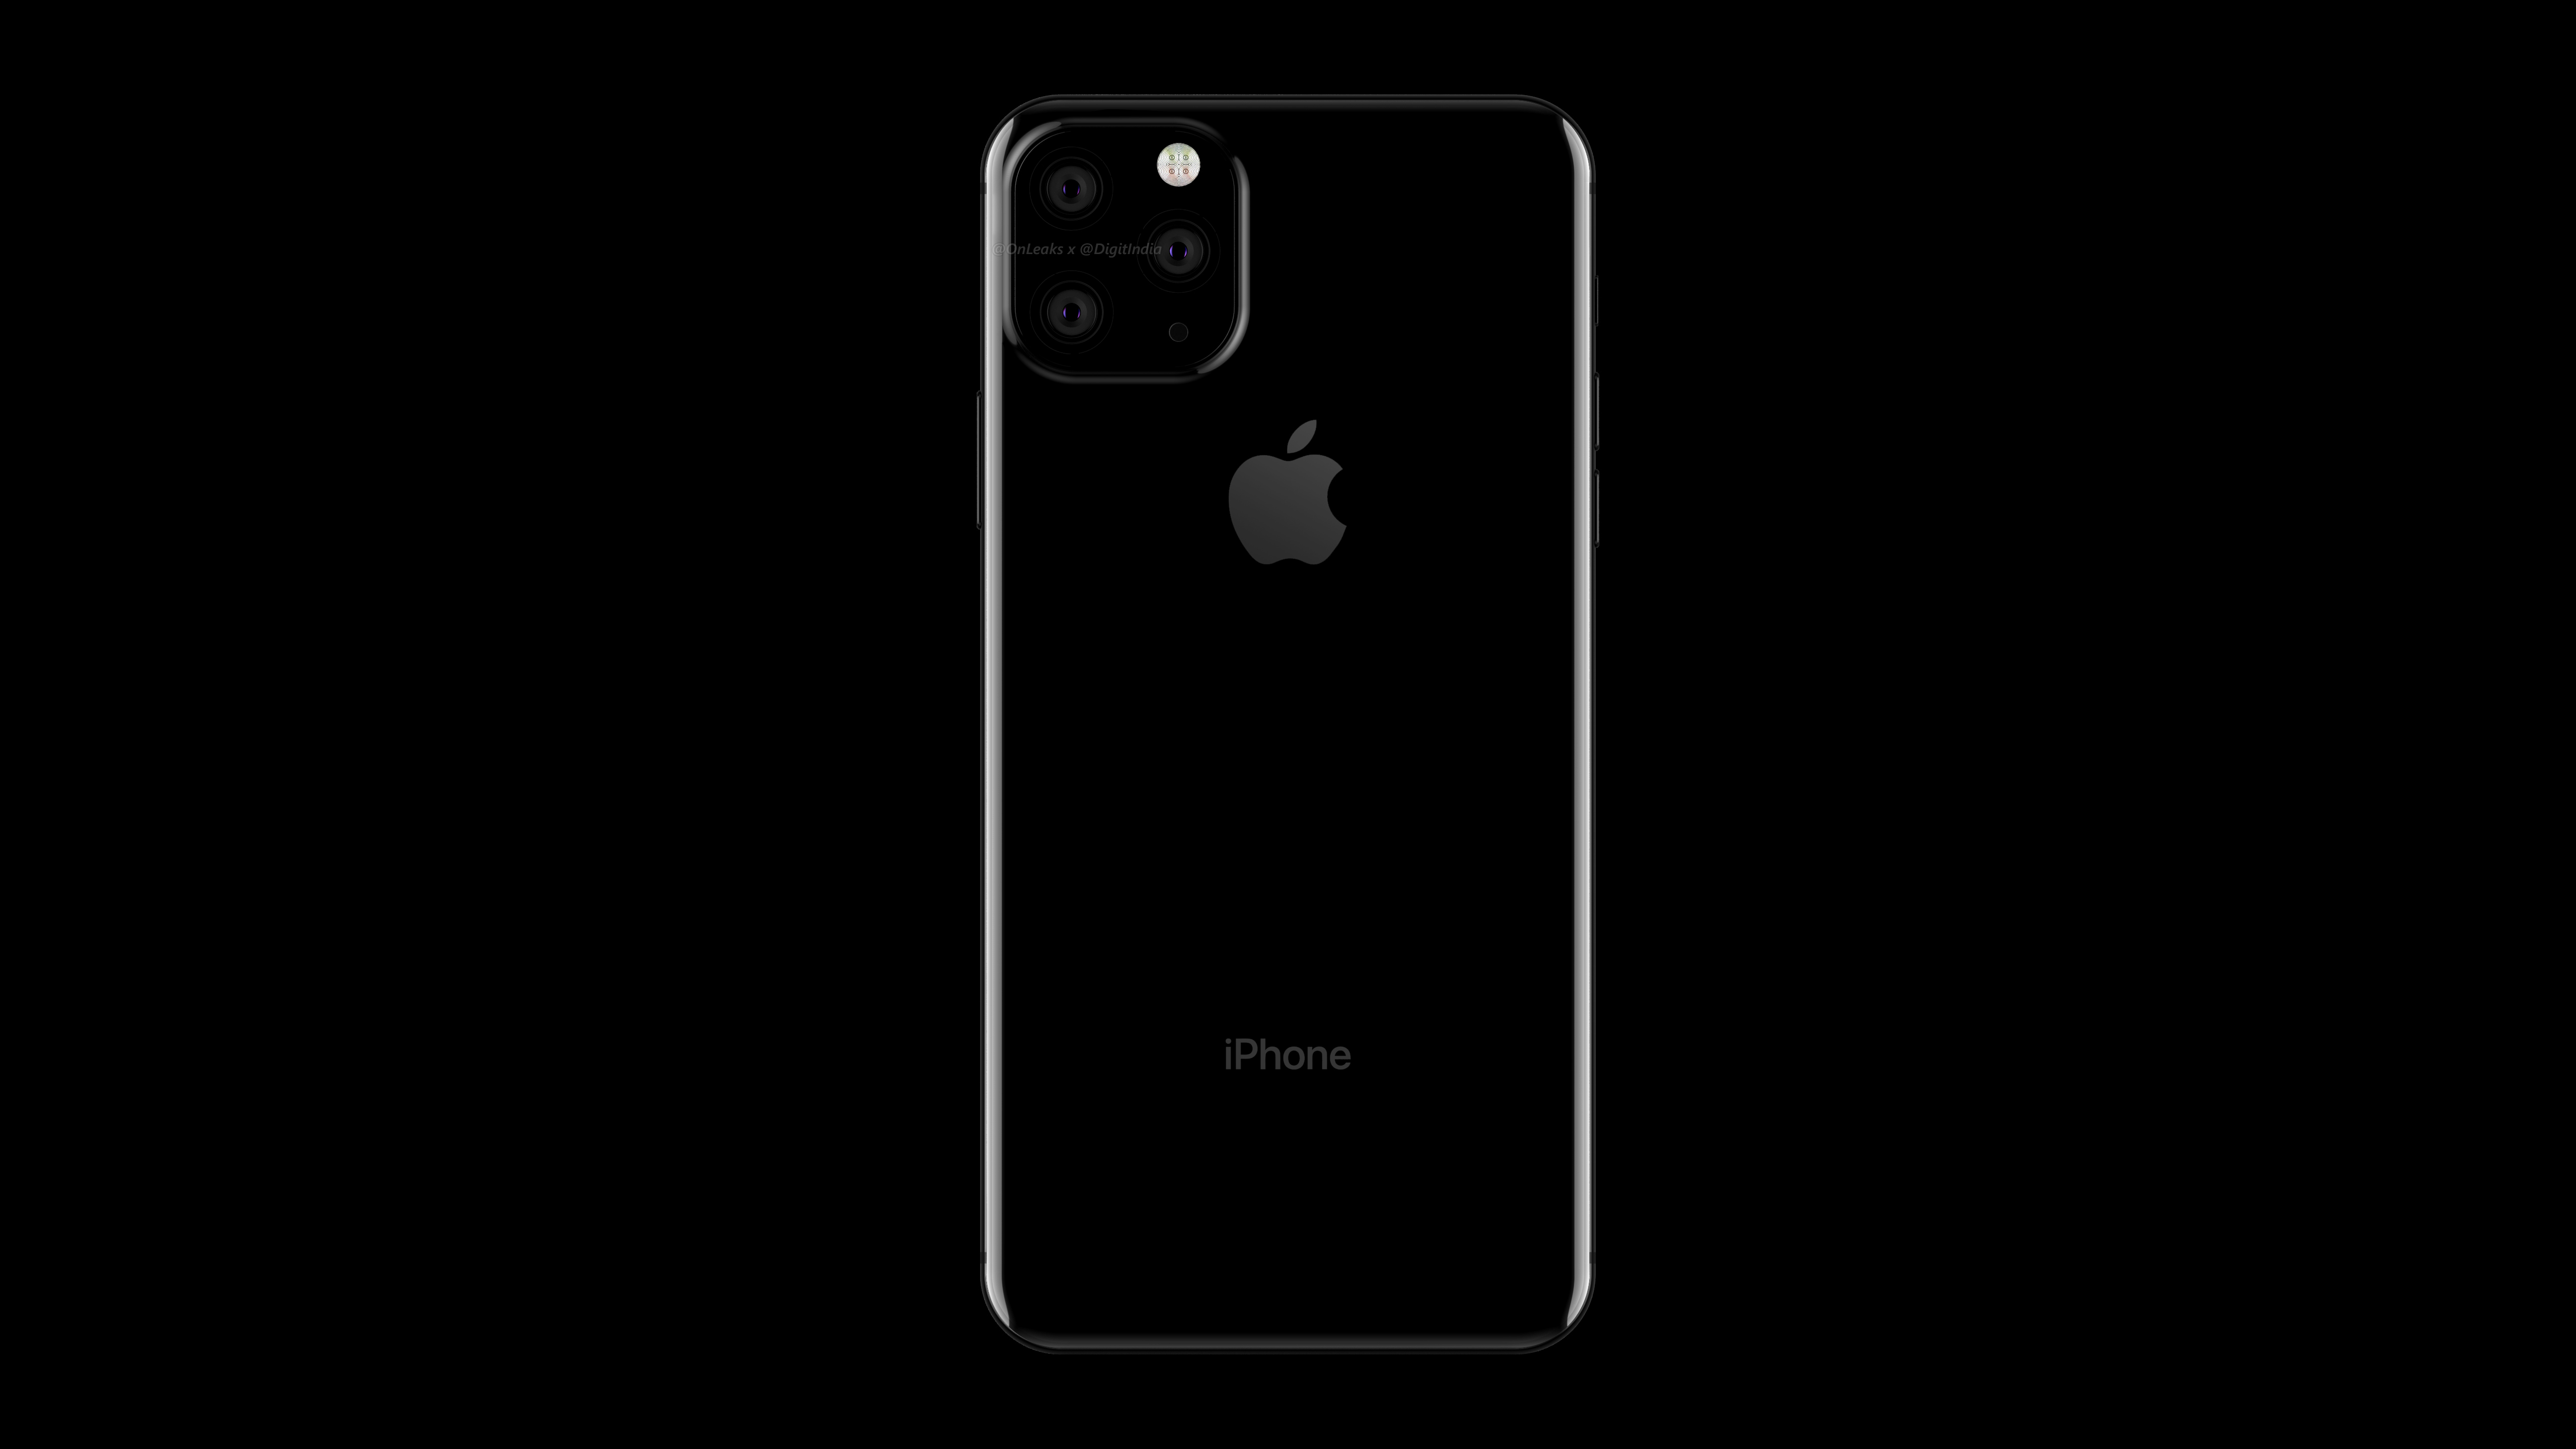 新型iphone 19年モデルは3眼カメラ搭載 予想レンダリング画像も公開される 私設apple委員会